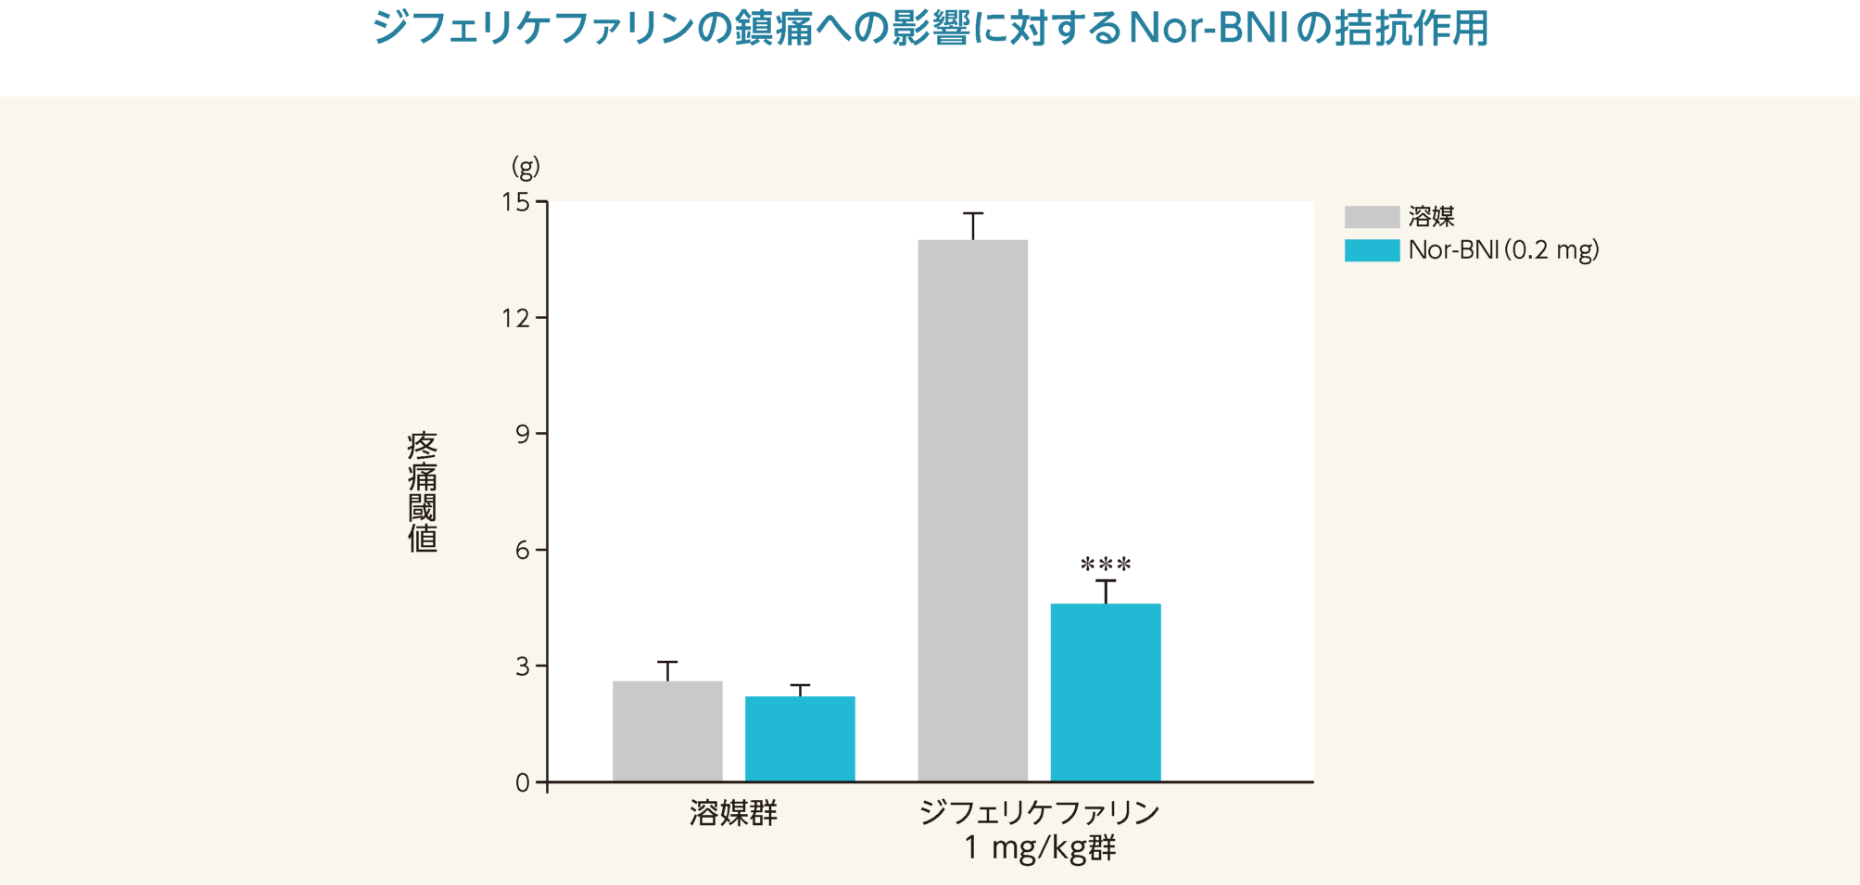 ジフェリケファリンの鎮痛への影響に対するNor-BNIの拮抗作用